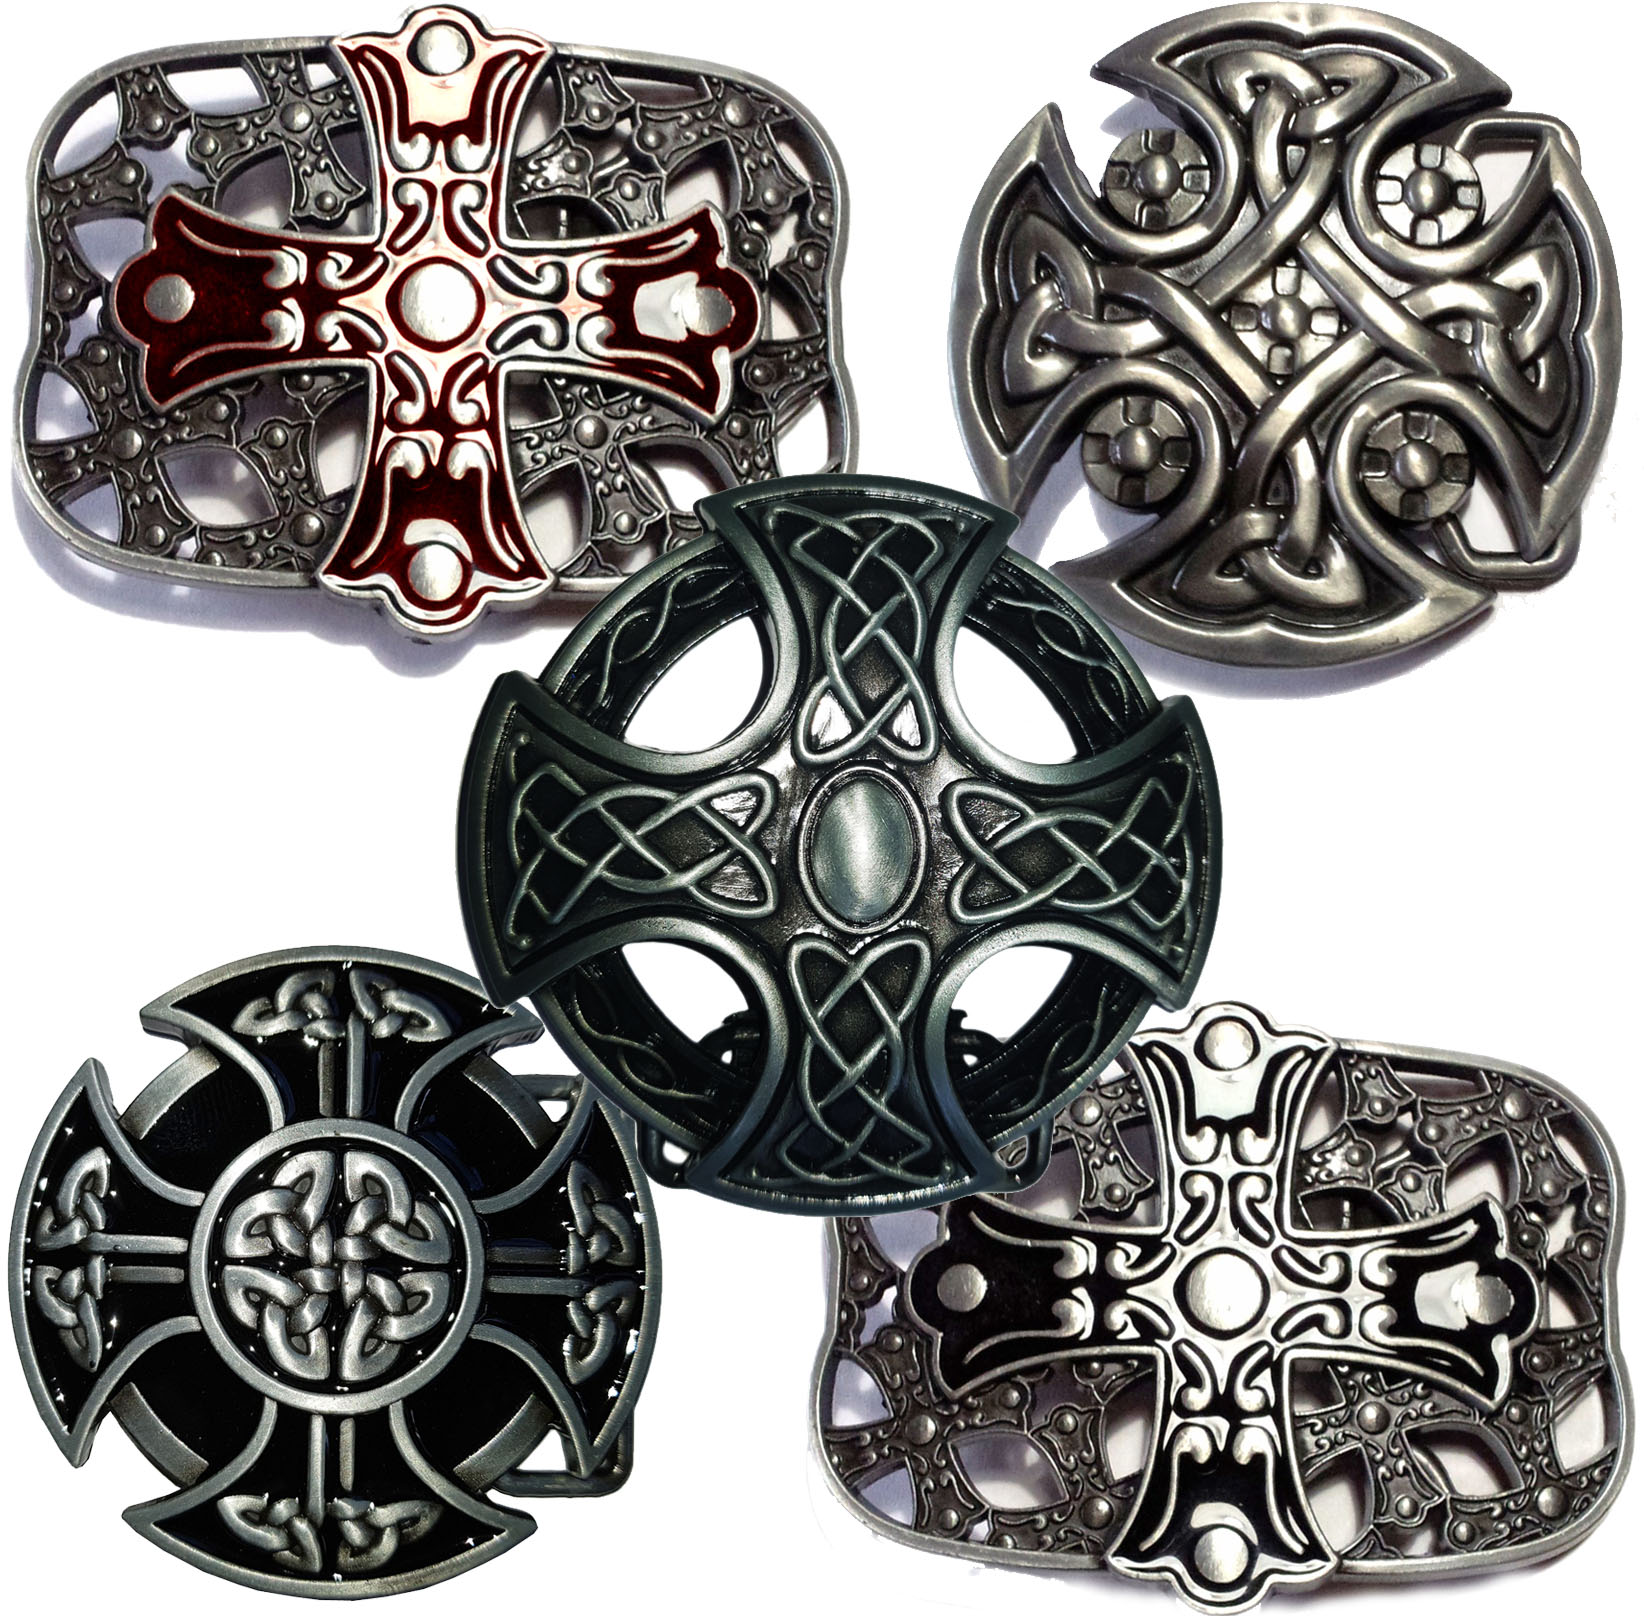 Keltisch Kreis Schild Silber Bronze Finish Gürtelschnalle 